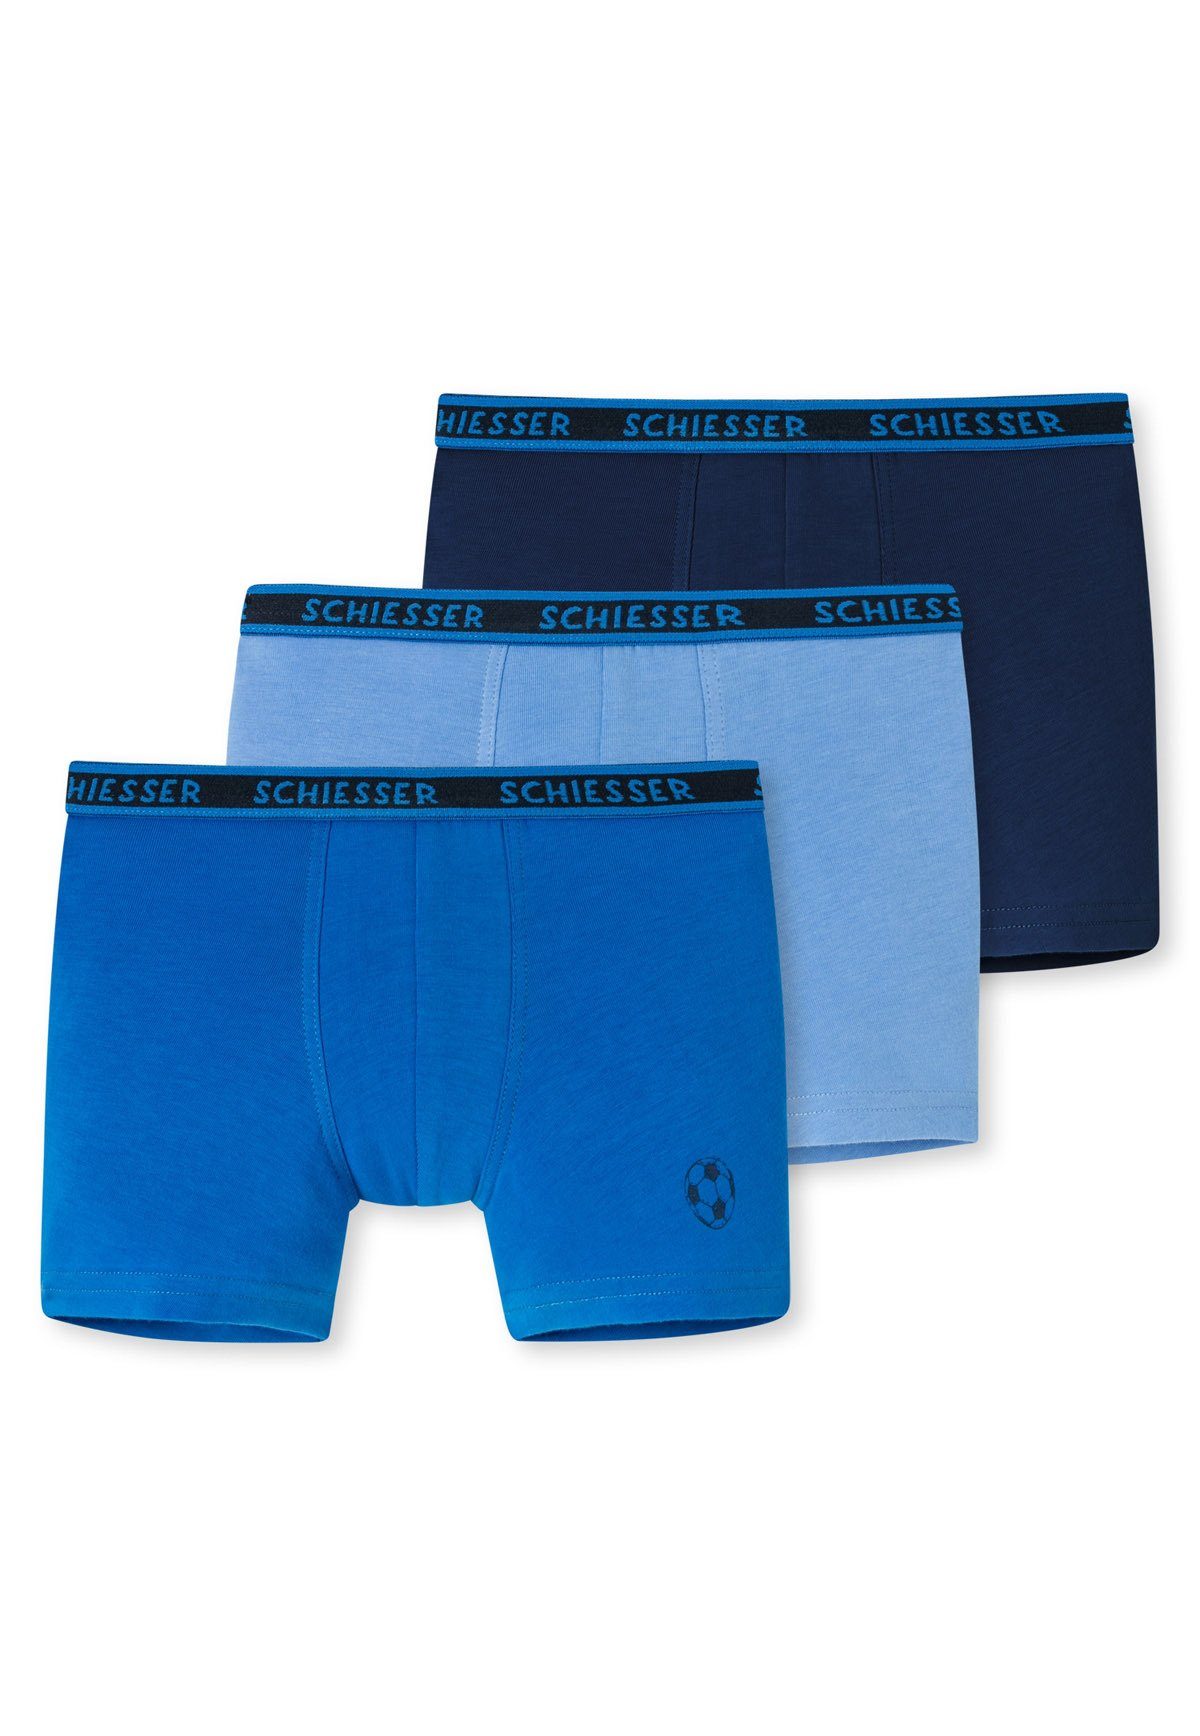 3er Jungen Hellblau/Blau/Dunkelblau Shorts Shorts Unterhose, Hip Schiesser Boxer - Pack (2)